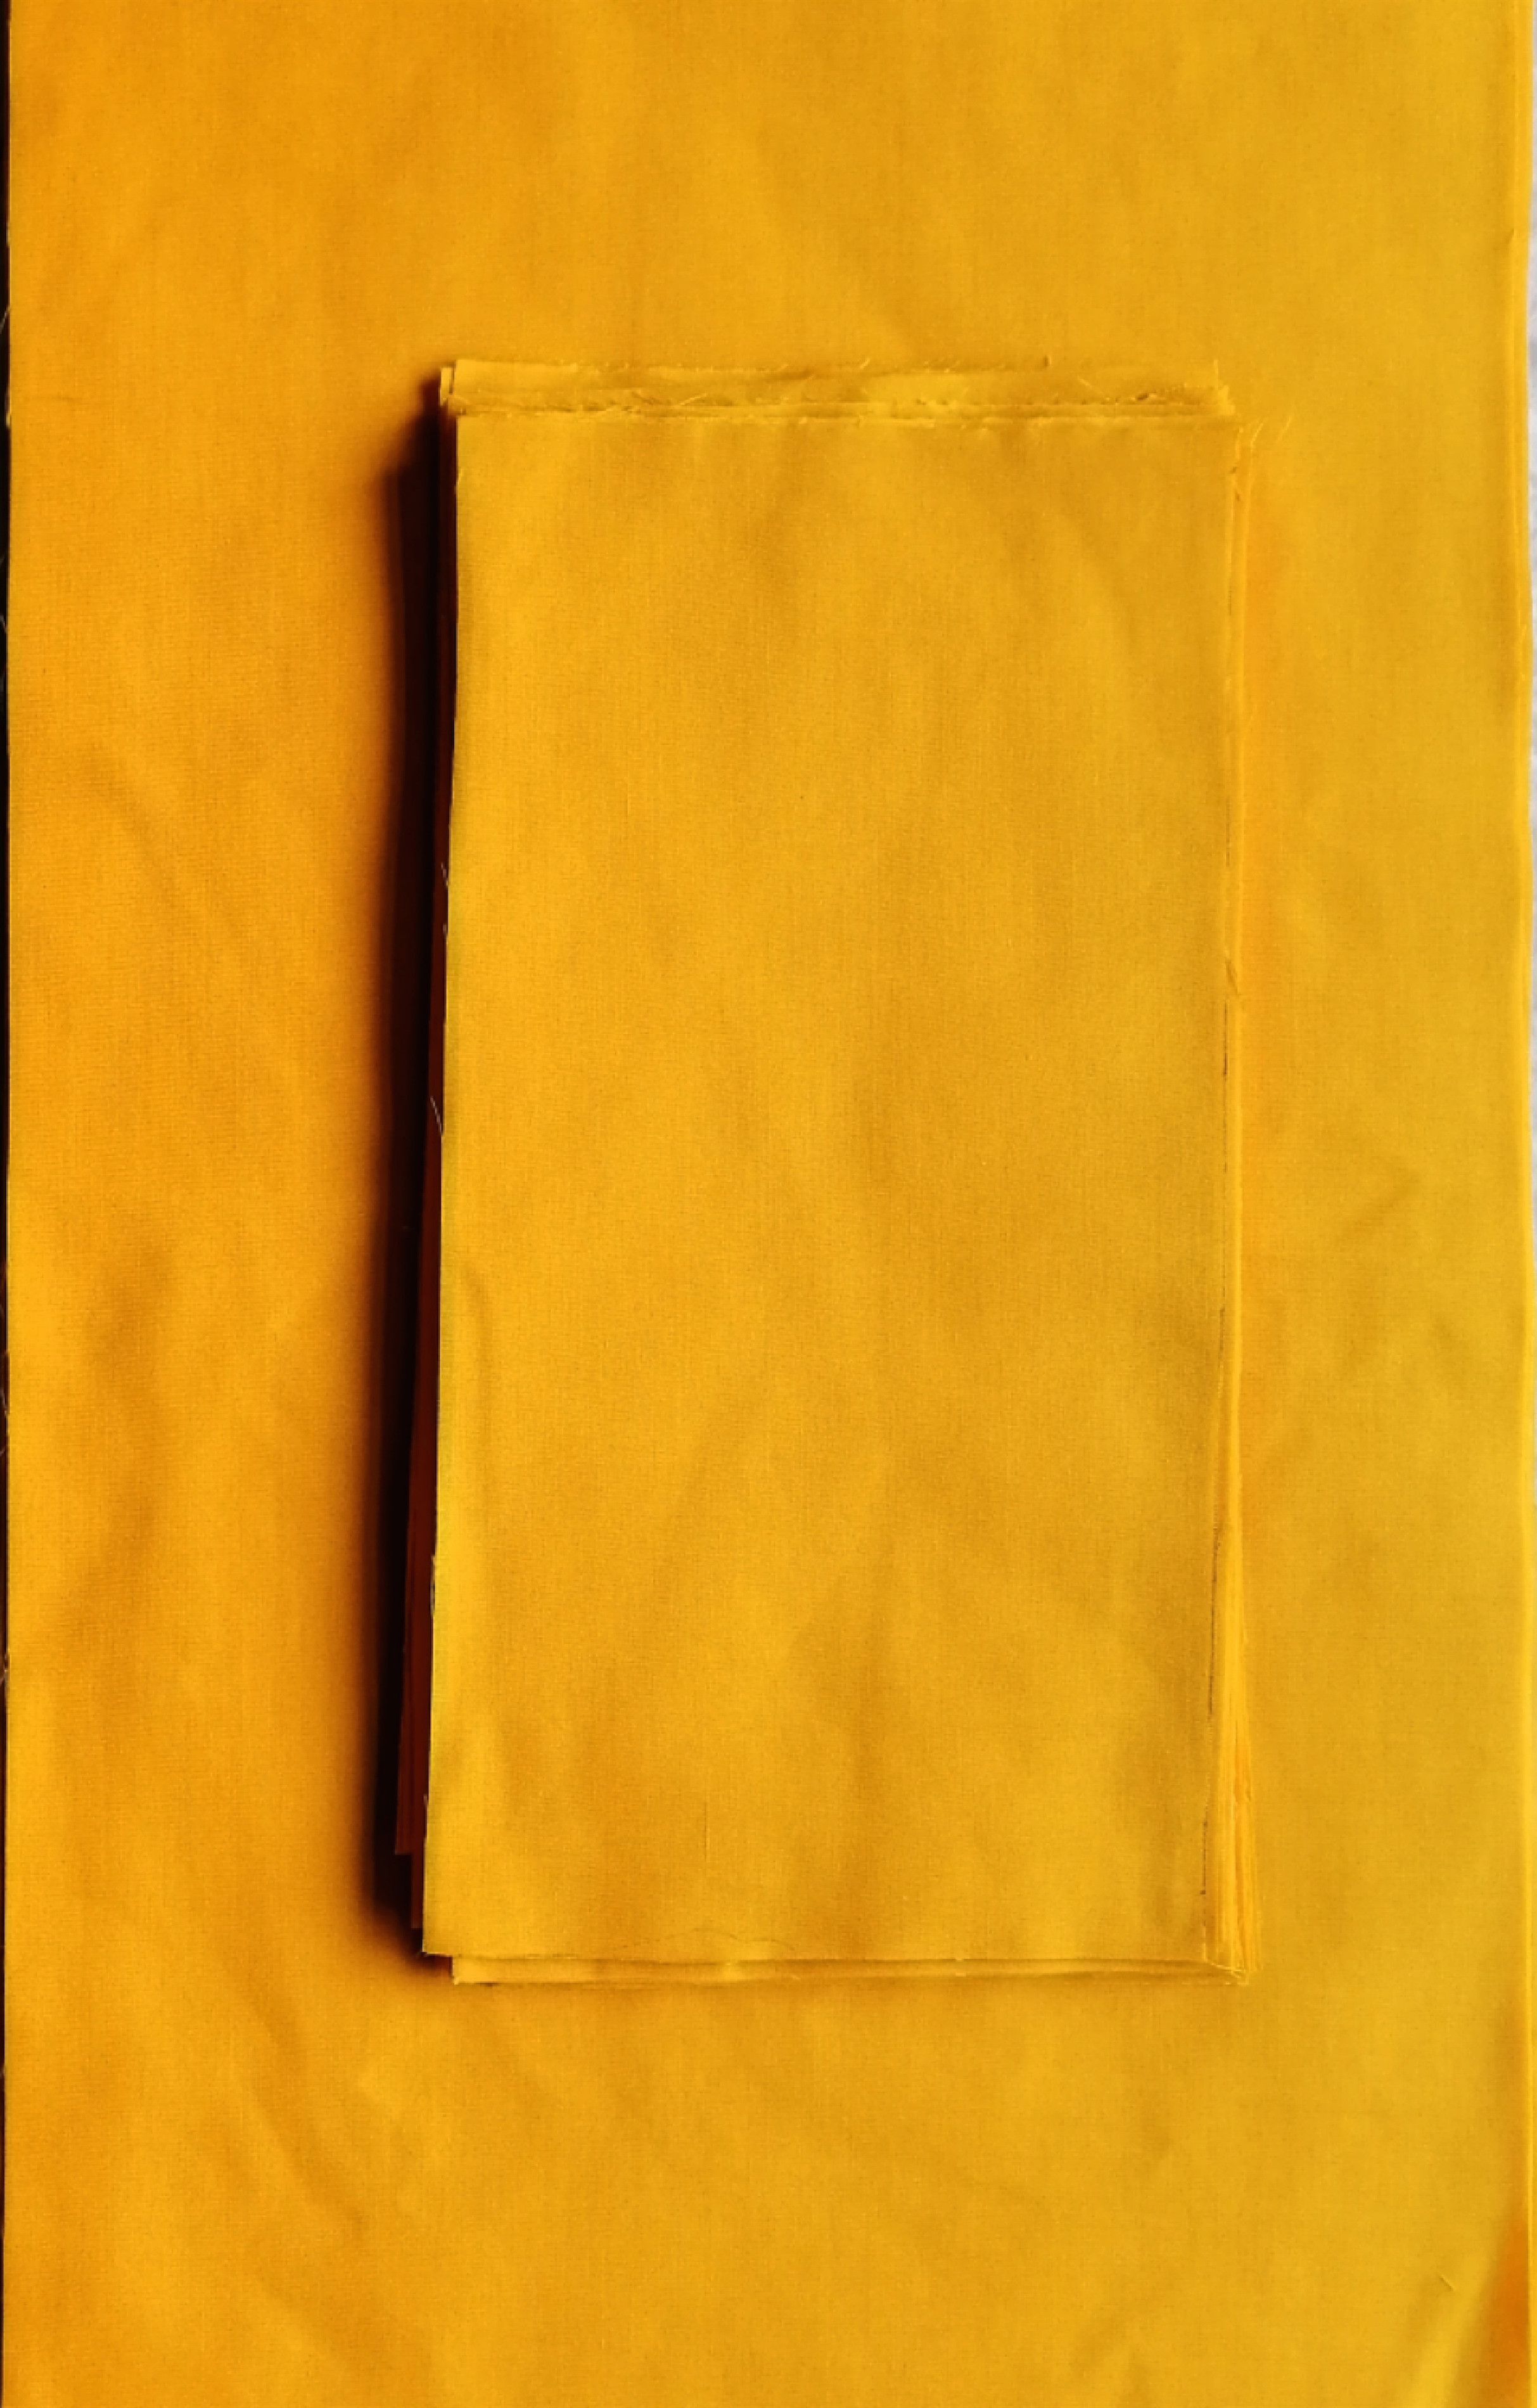 邱裕松老爷子手绘传统书法所用黄布30*60厘米  15*30厘米两种尺寸